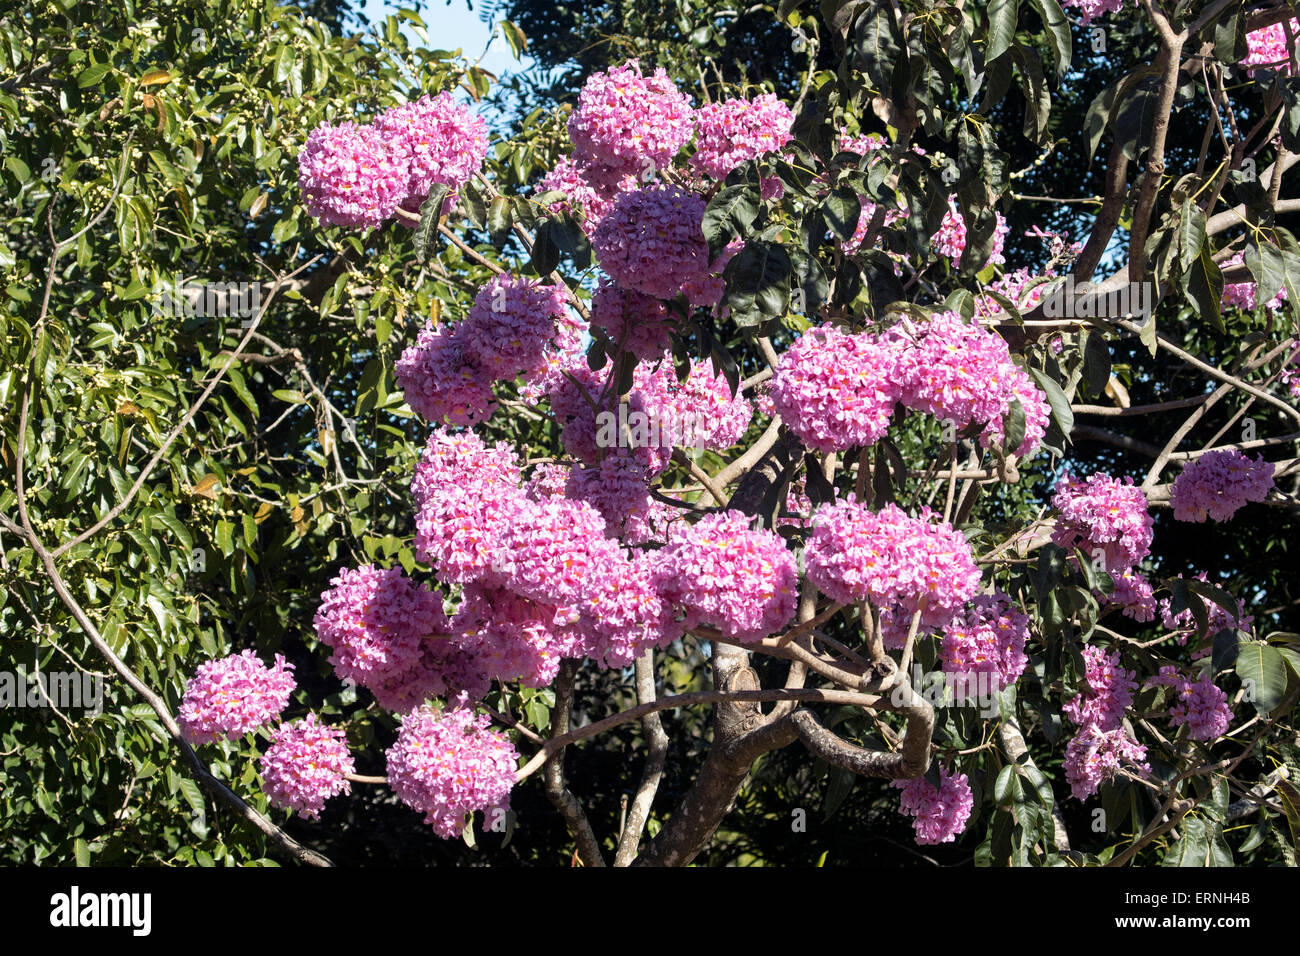 Les grandes grappes de fleurs rose vif de Tabebuia impetiginosa, arbre à trompettes roses, contre son feuillage vert foncé en Australie Banque D'Images